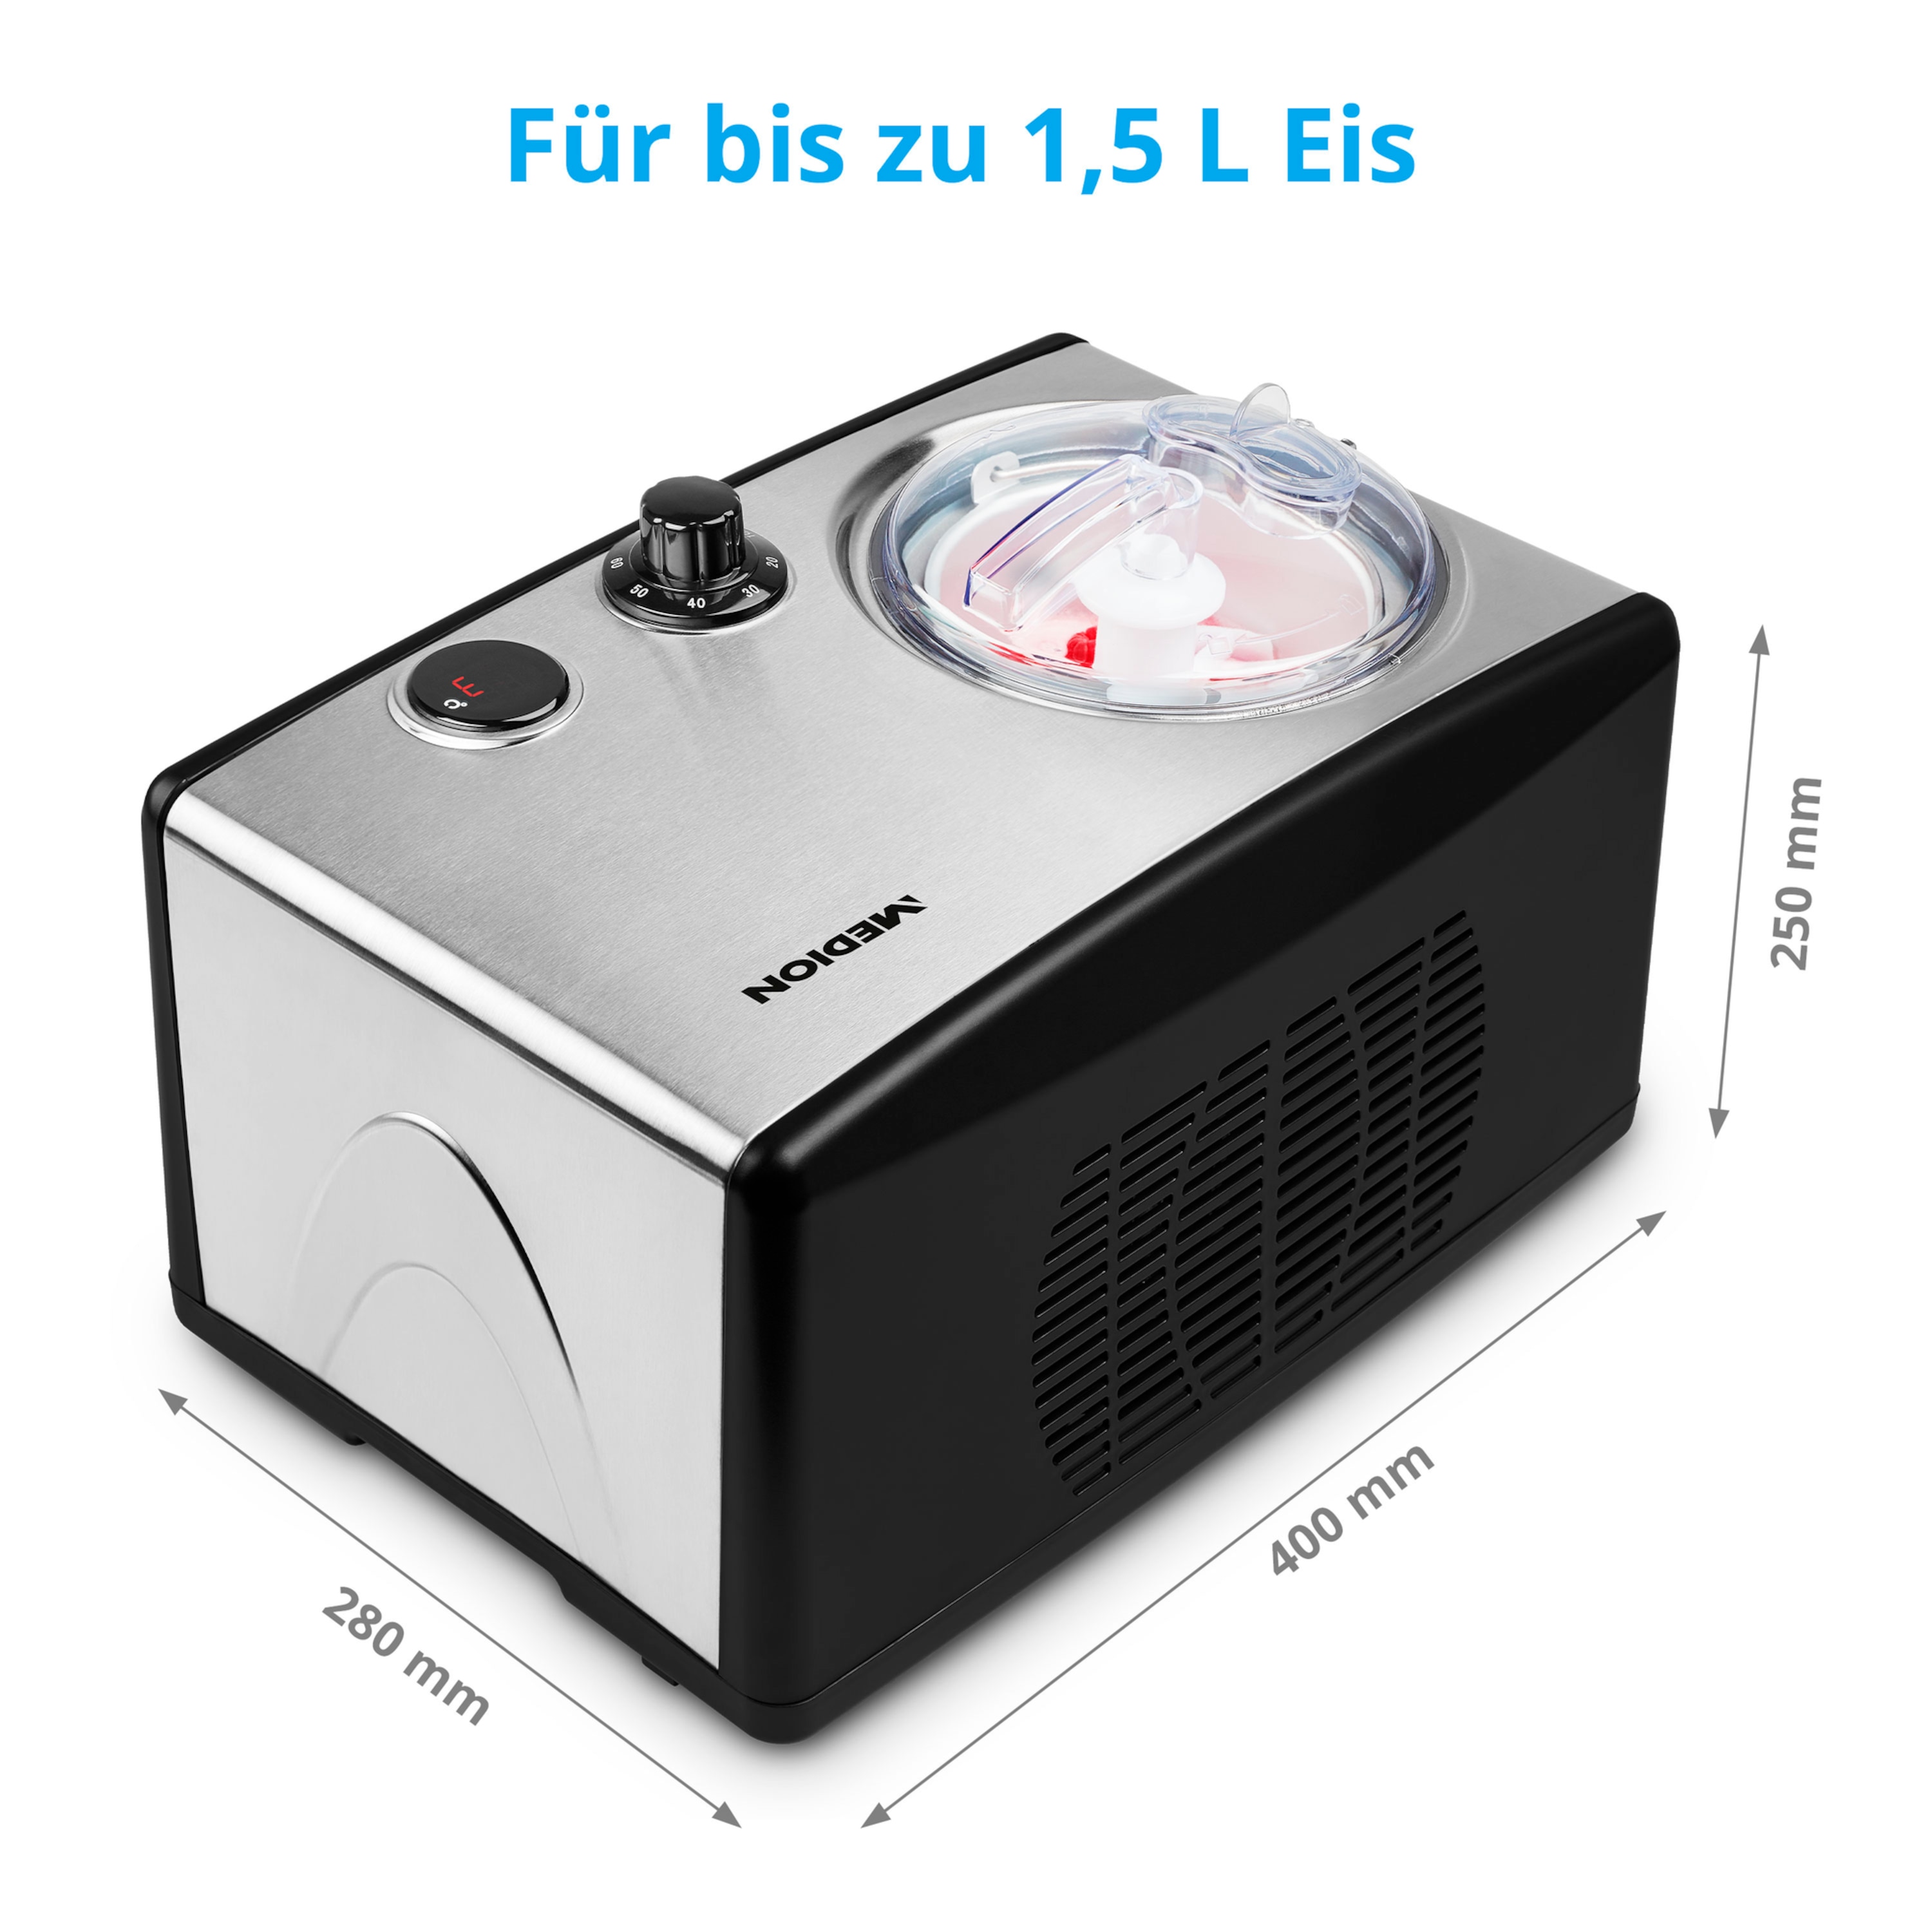 MEDION® Eismaschine   MD 18387, Kapazität für 1,5 L Eis (Füllmenge: 800 ml), selbstkühlend mit Kompressor, geeignet für die Zubereitung von Eiscreme, Frozen Yoghurt & Sorbet